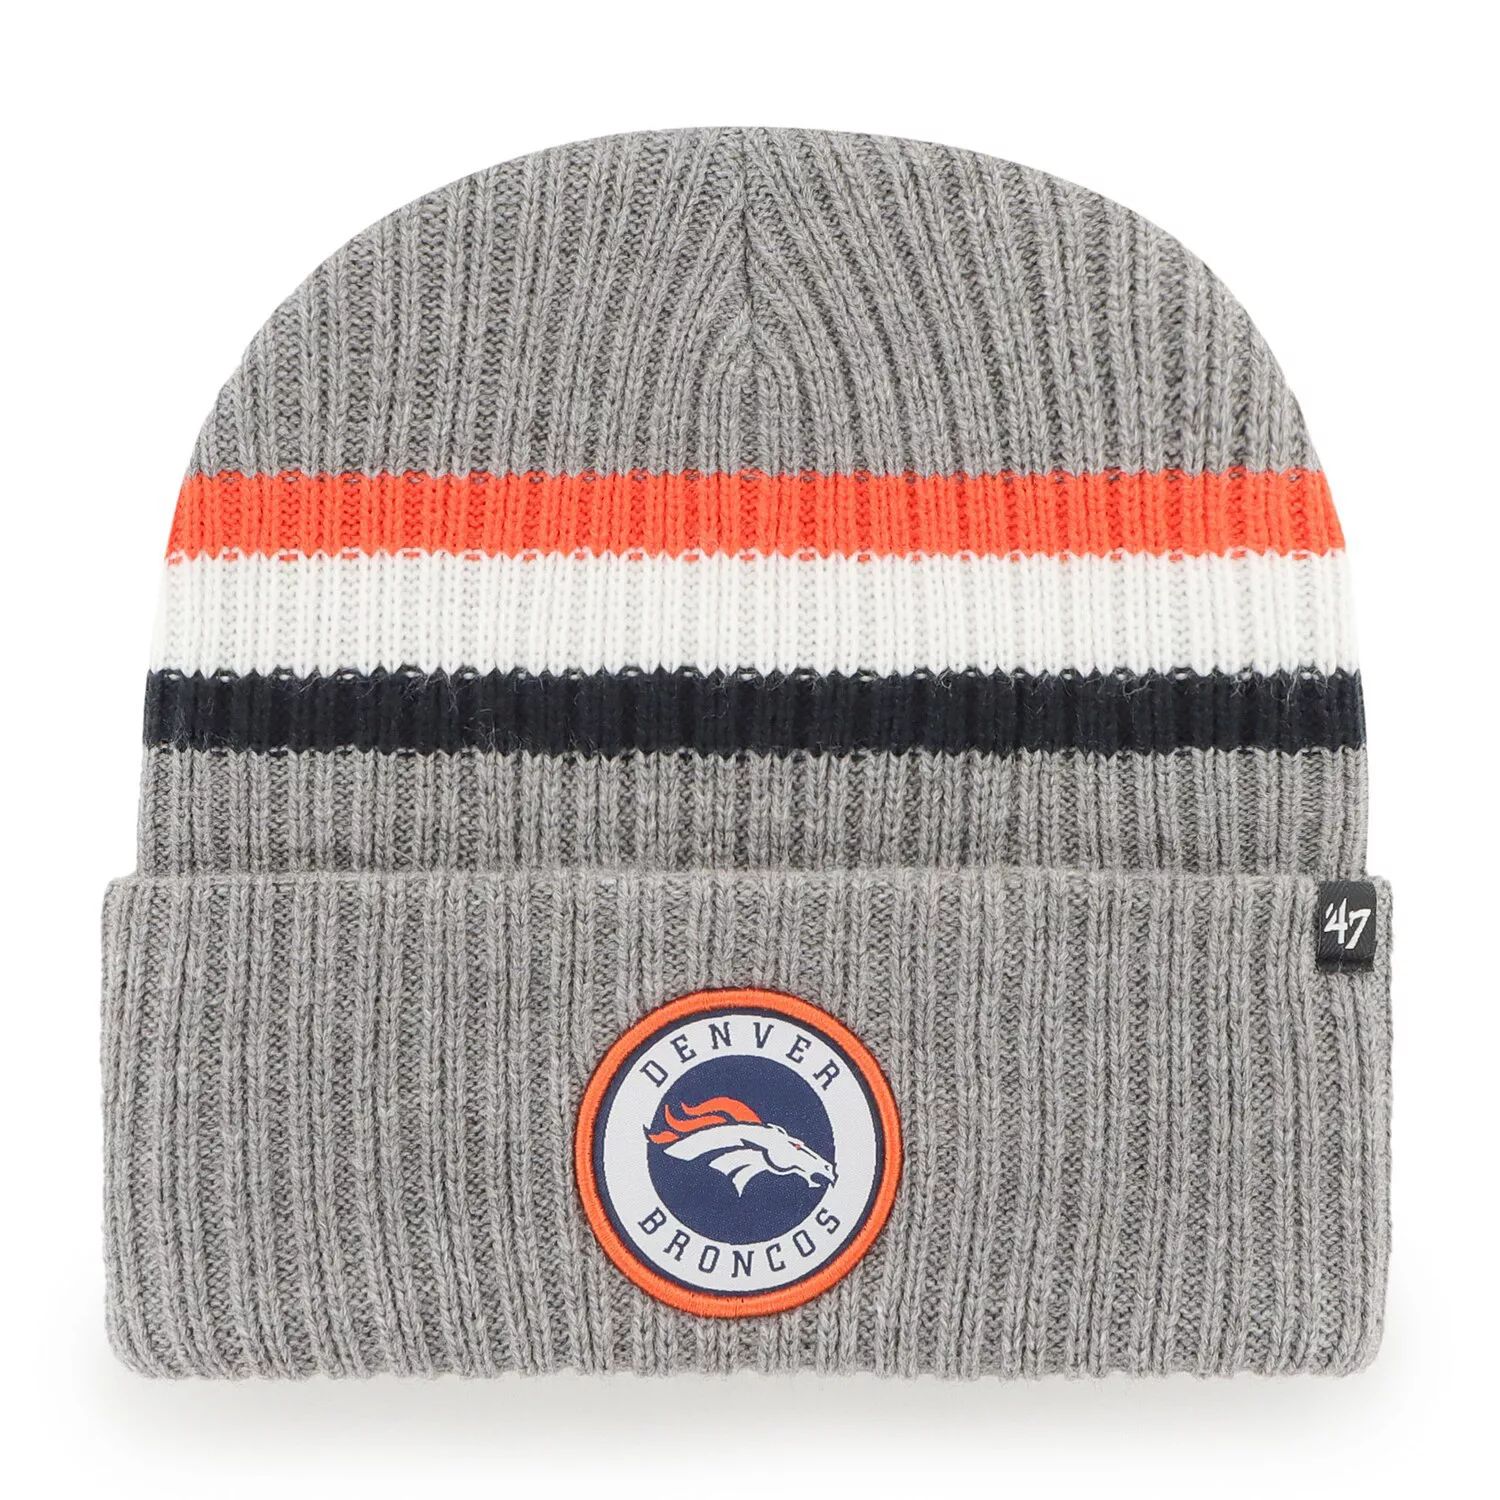 Мужская серая вязаная шапка с манжетами '47 Denver Broncos Highline мужская серая вязаная шапка chicago bears highline с манжетами 47 brand